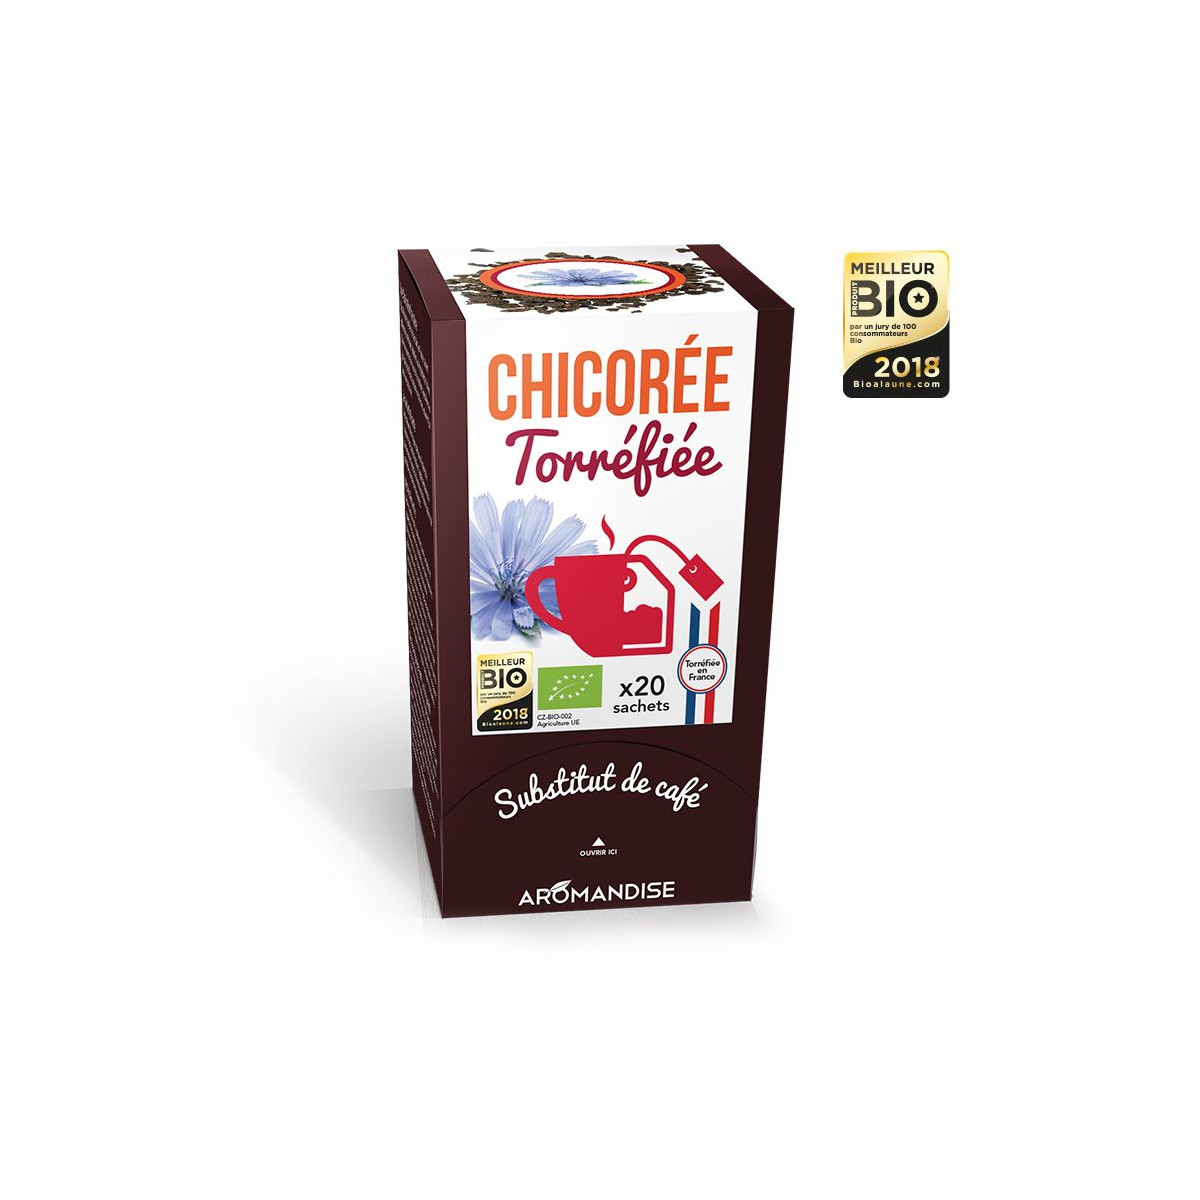 Chicorée torréfiée - substitut de café - Aromandise